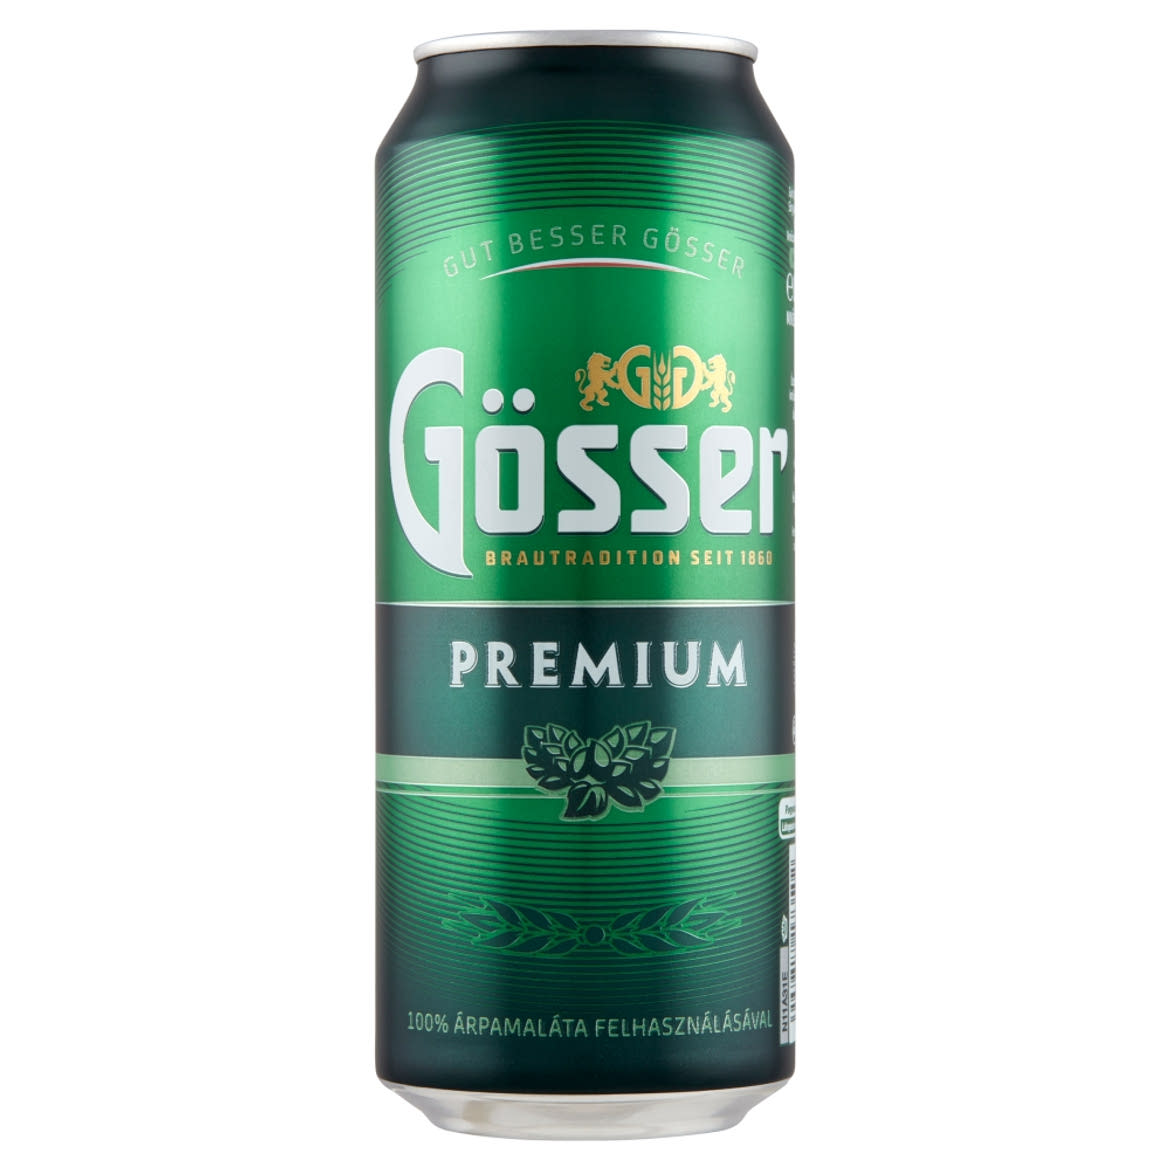 Gösser Premium minőségi világos sör 5%